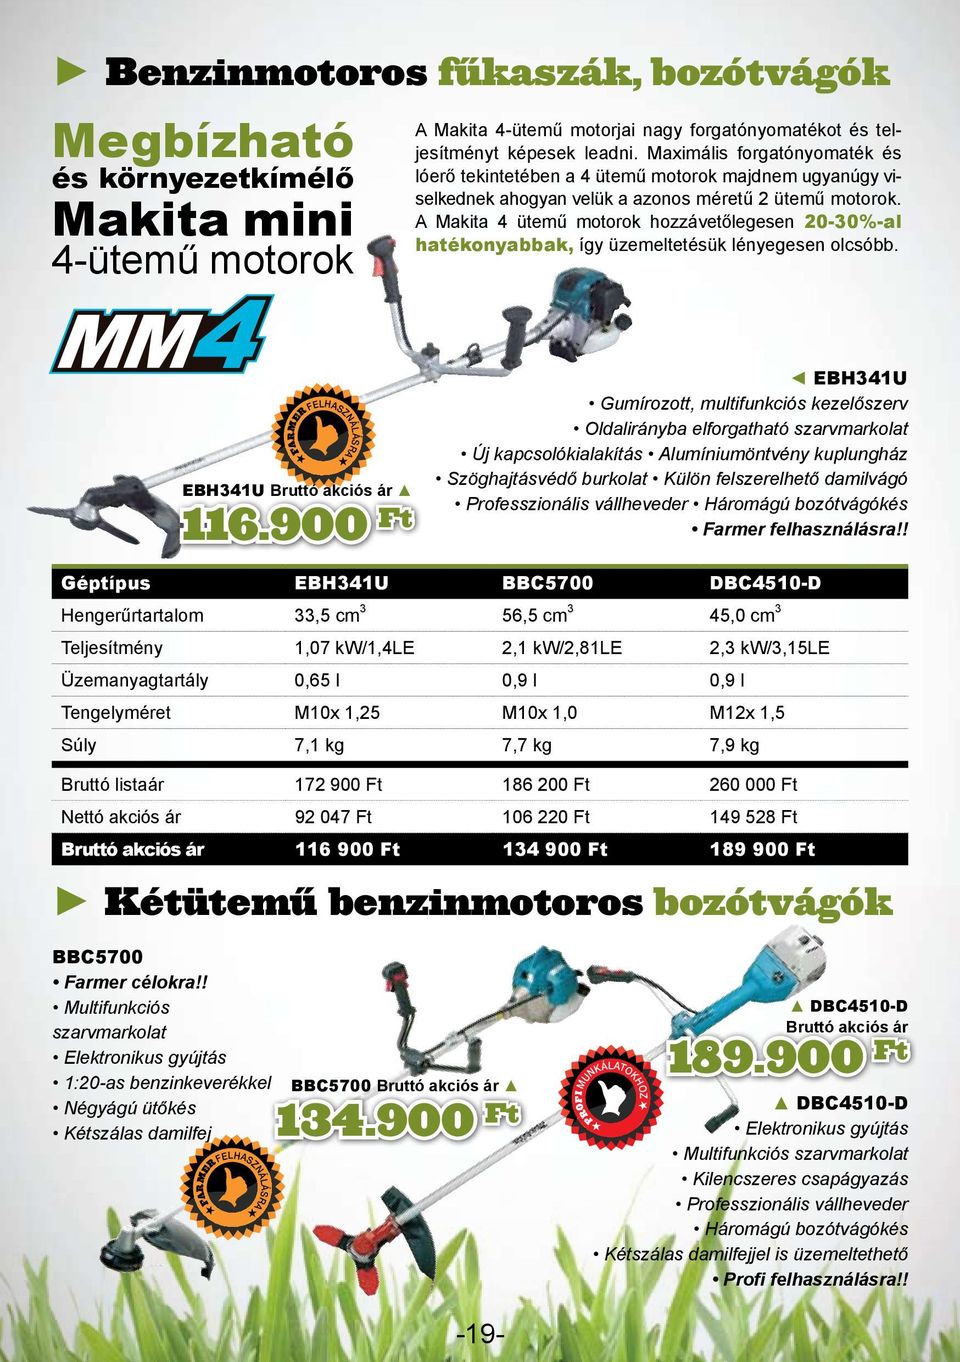 A Makita 4 ütemű motorok hozzávetőlegesen 20-30%-al hatékonyabbak, így üzemeltetésük lényegesen olcsóbb. FARMER FELHASZNÁLÁSRA EBH341U akciós ár 116.